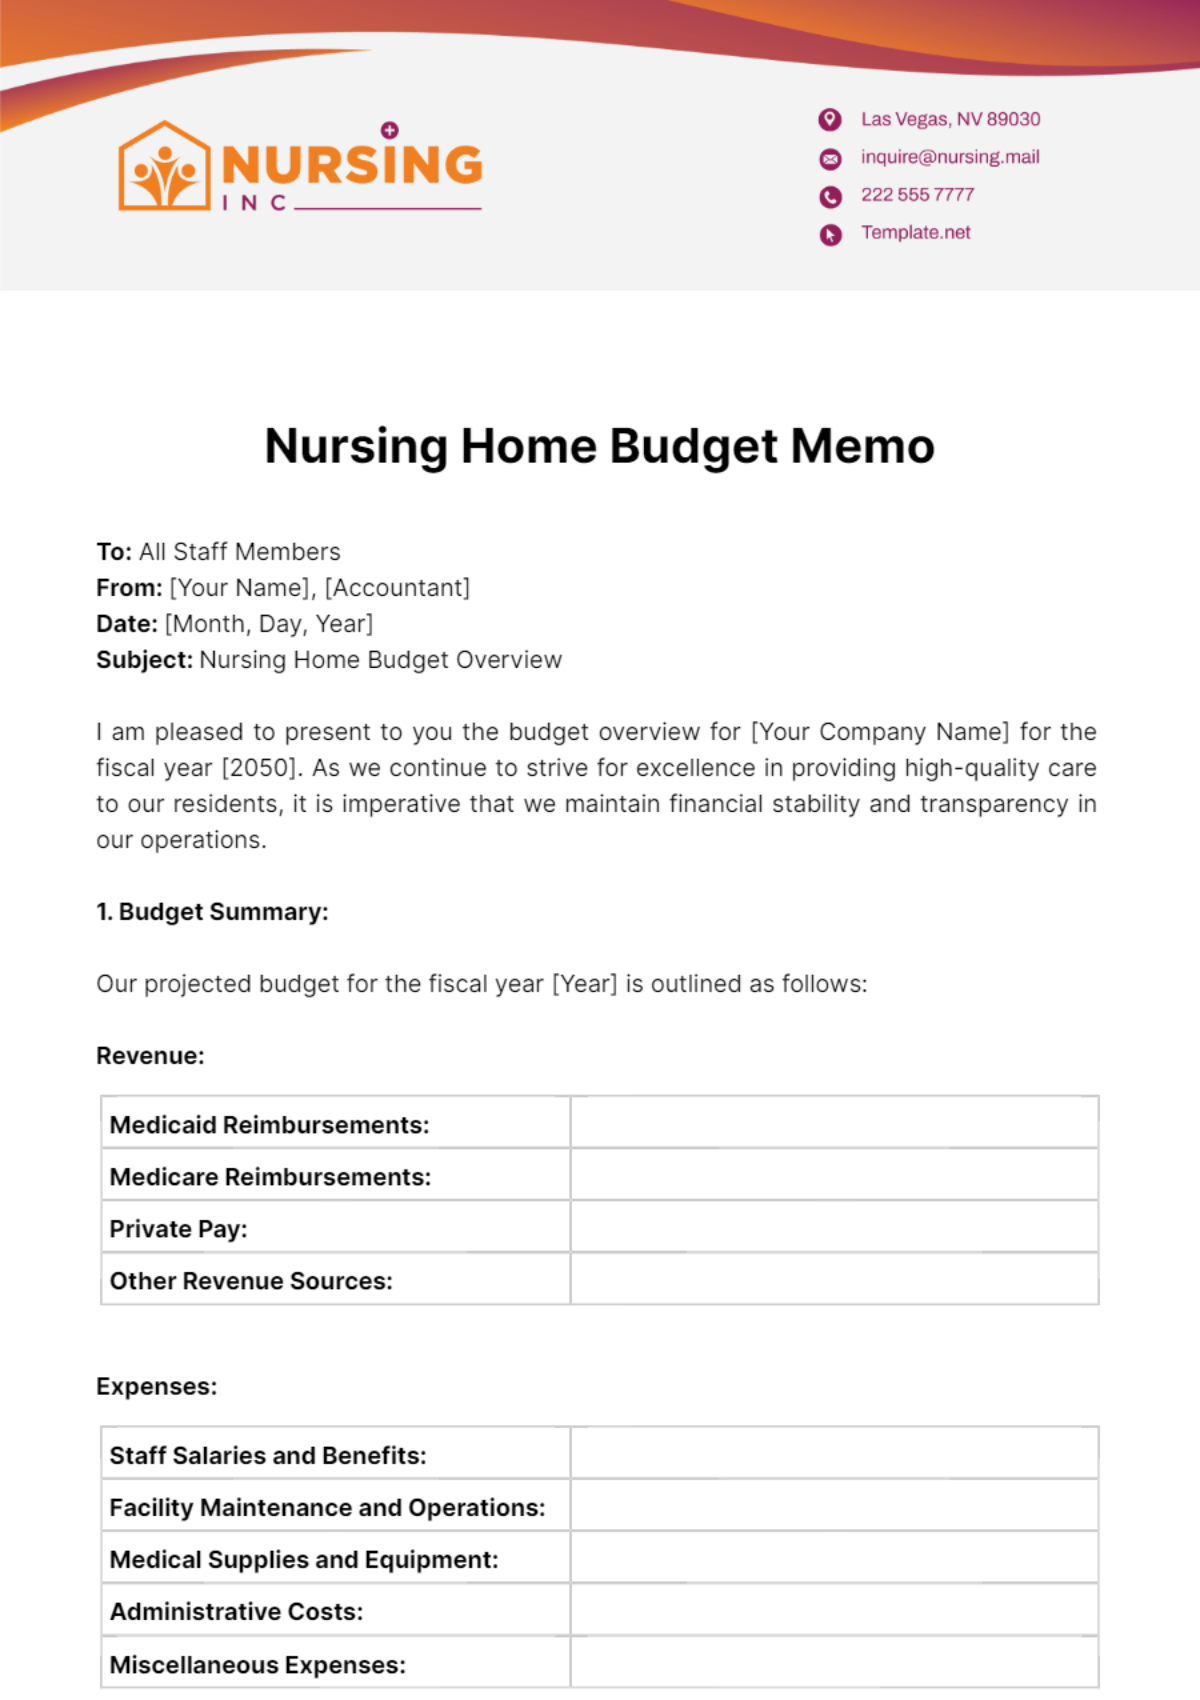 Nursing Home Budget Memo Template